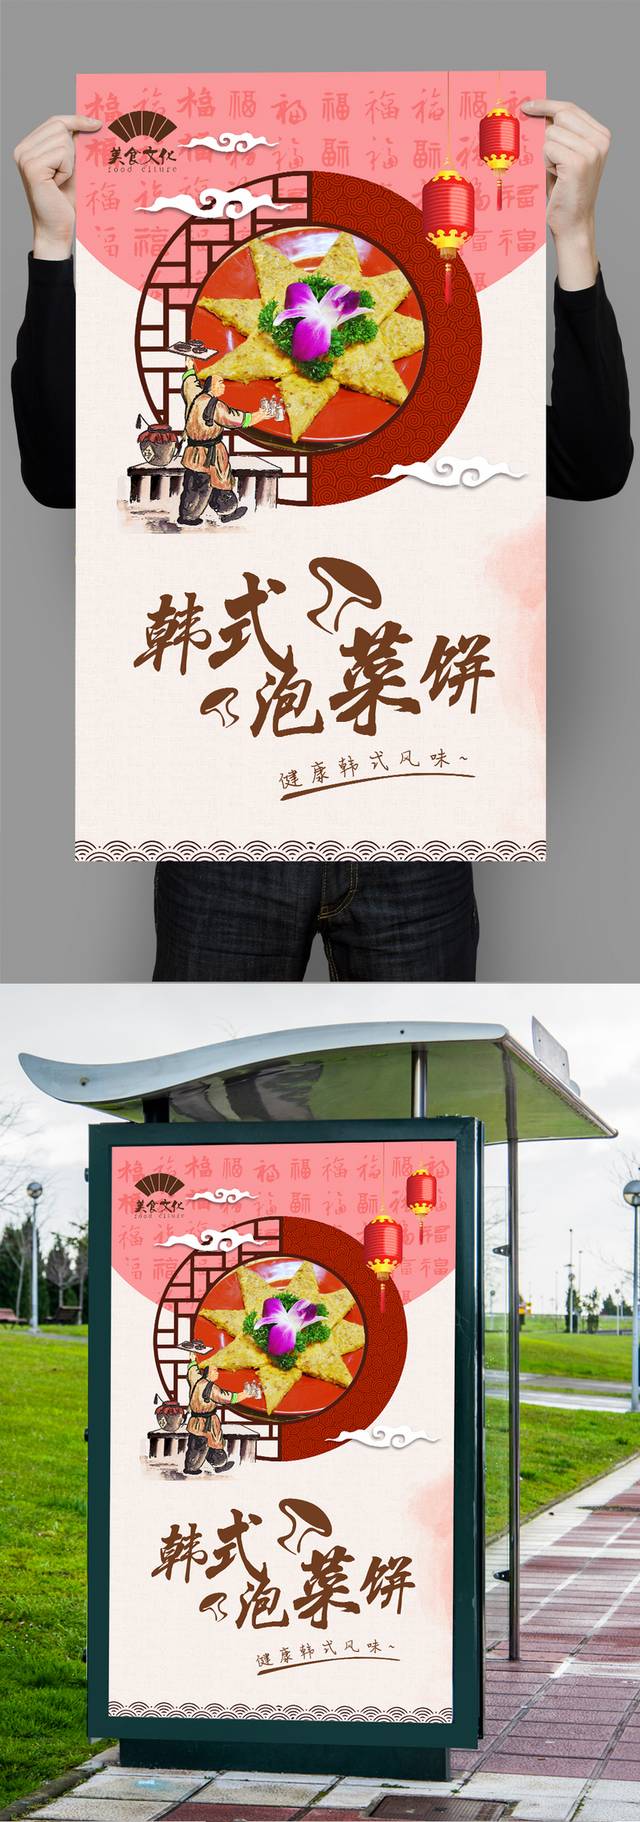 原创韩式泡菜饼海报设计